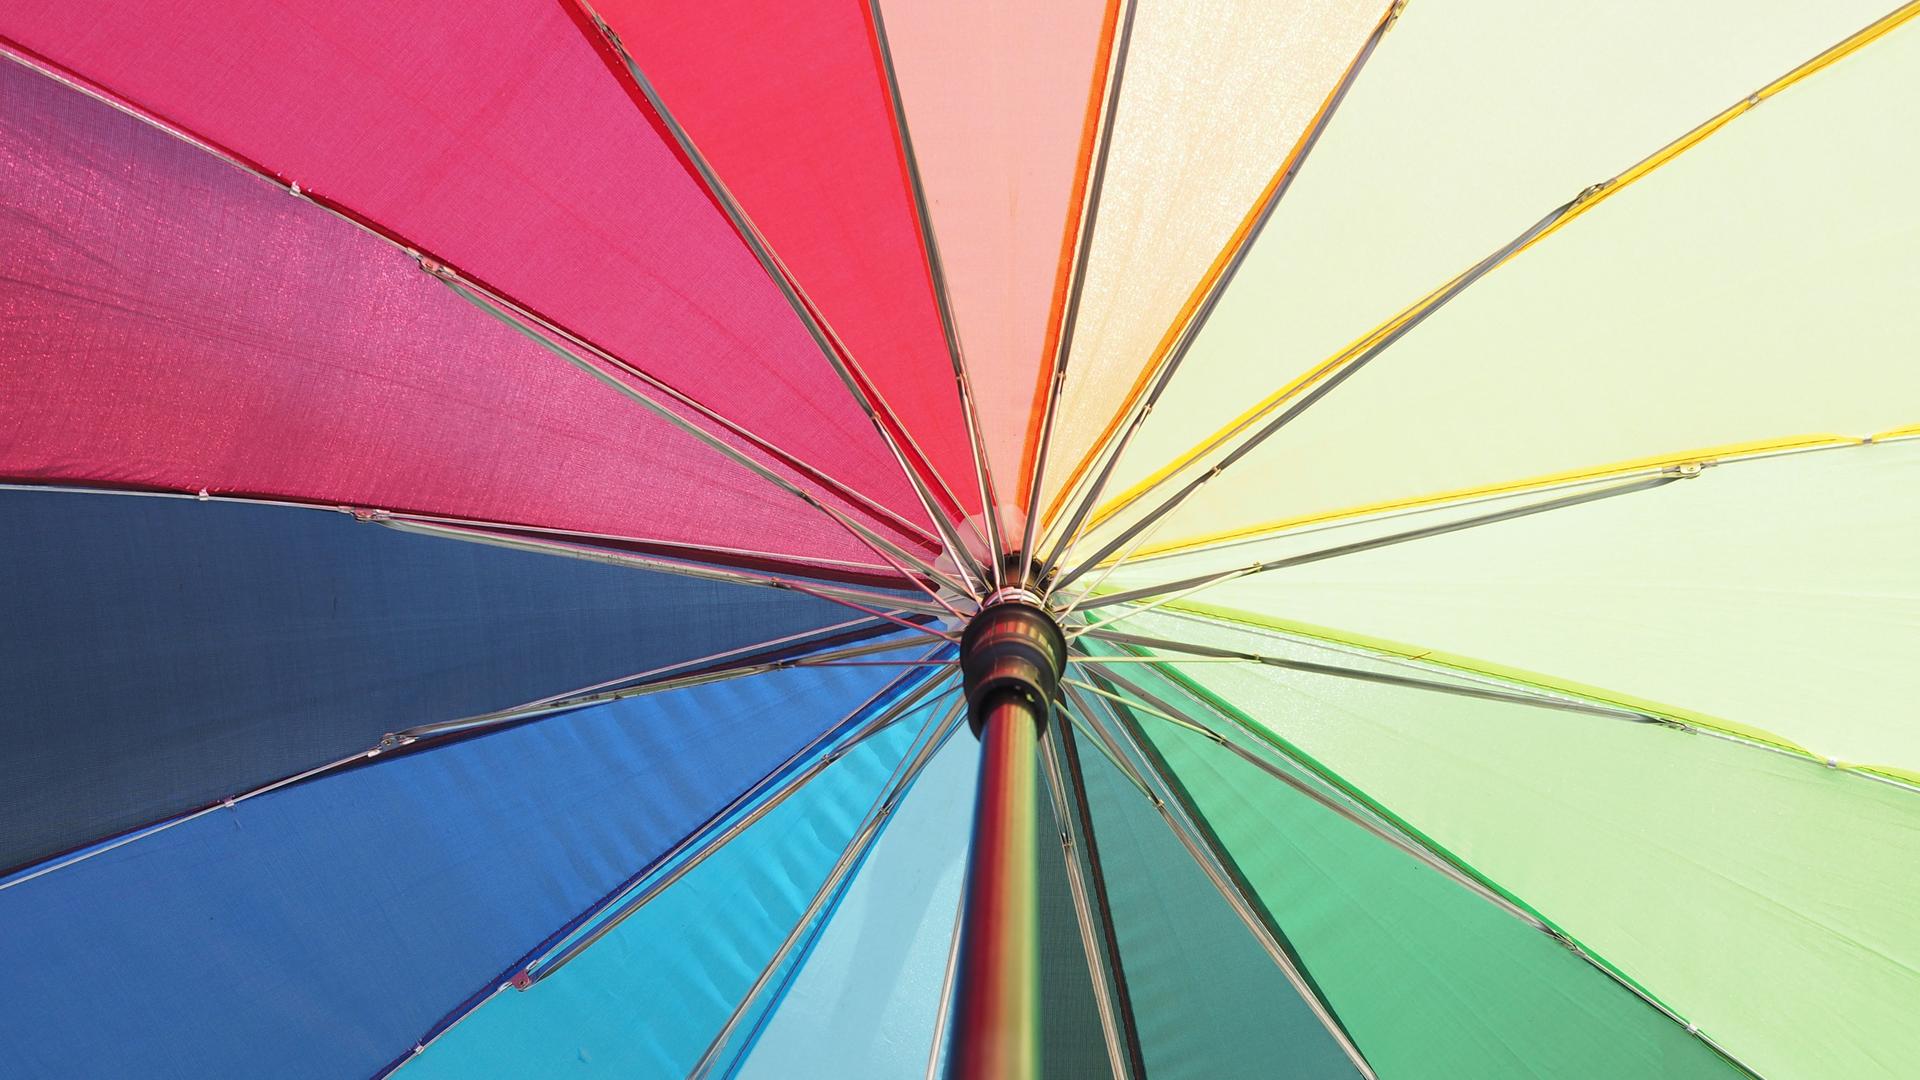 Blick von unten in einen geöffneten, regenbogenfarbenen Schirm